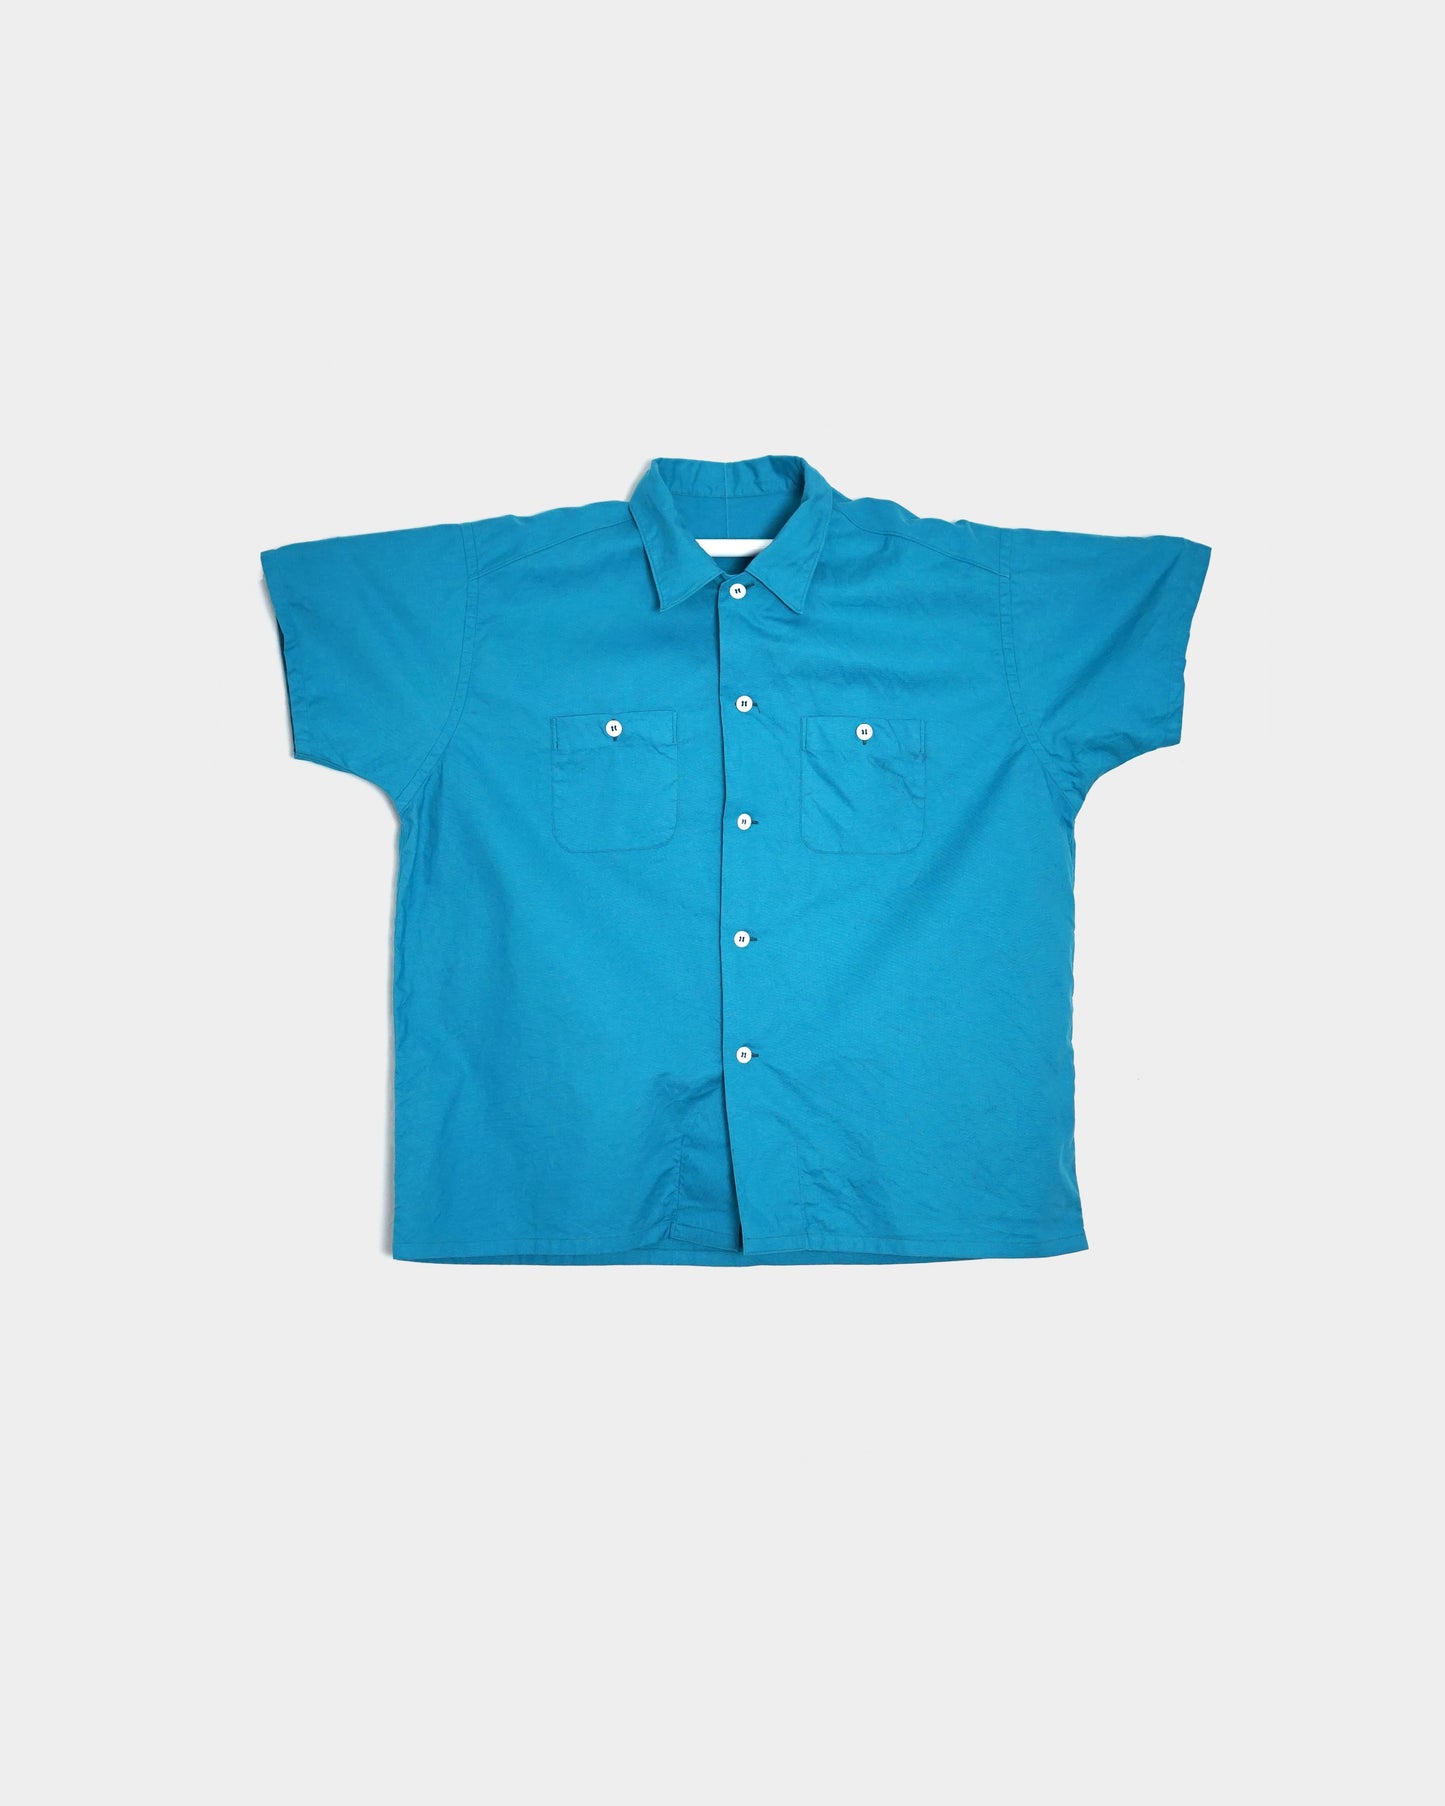 TUKI/blouse "Turquoise"